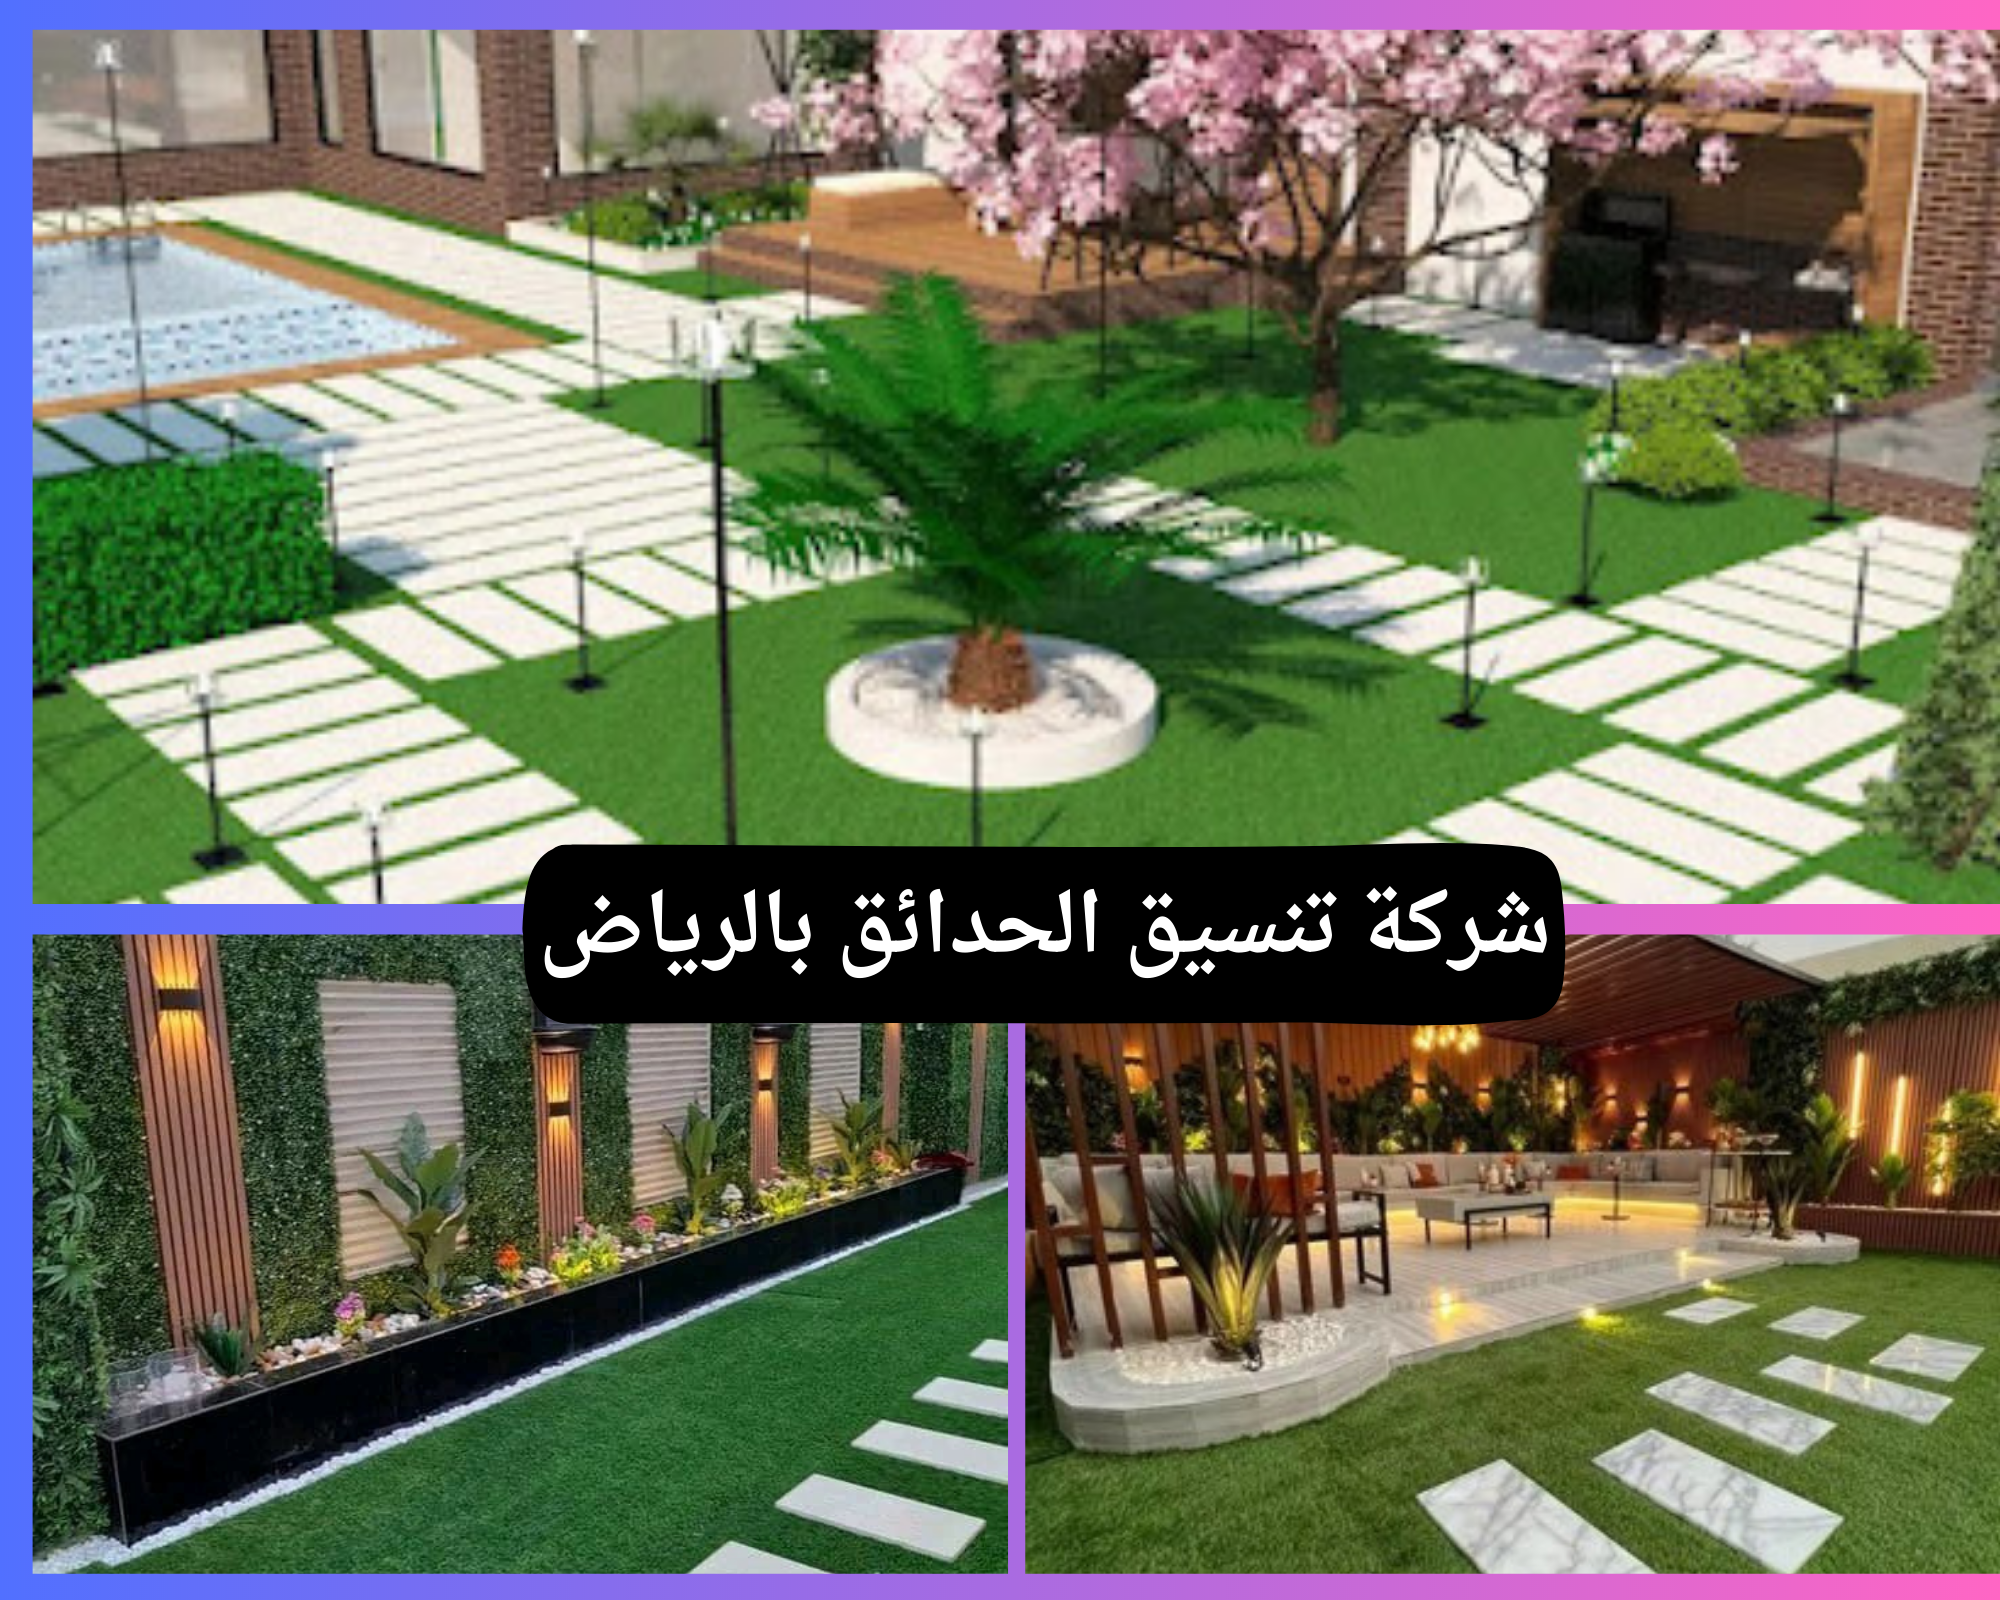 خبراء تصميم الحدائق واللاند سكيب في الرياض تزيين وتصميم احواش منزلية بالرياض